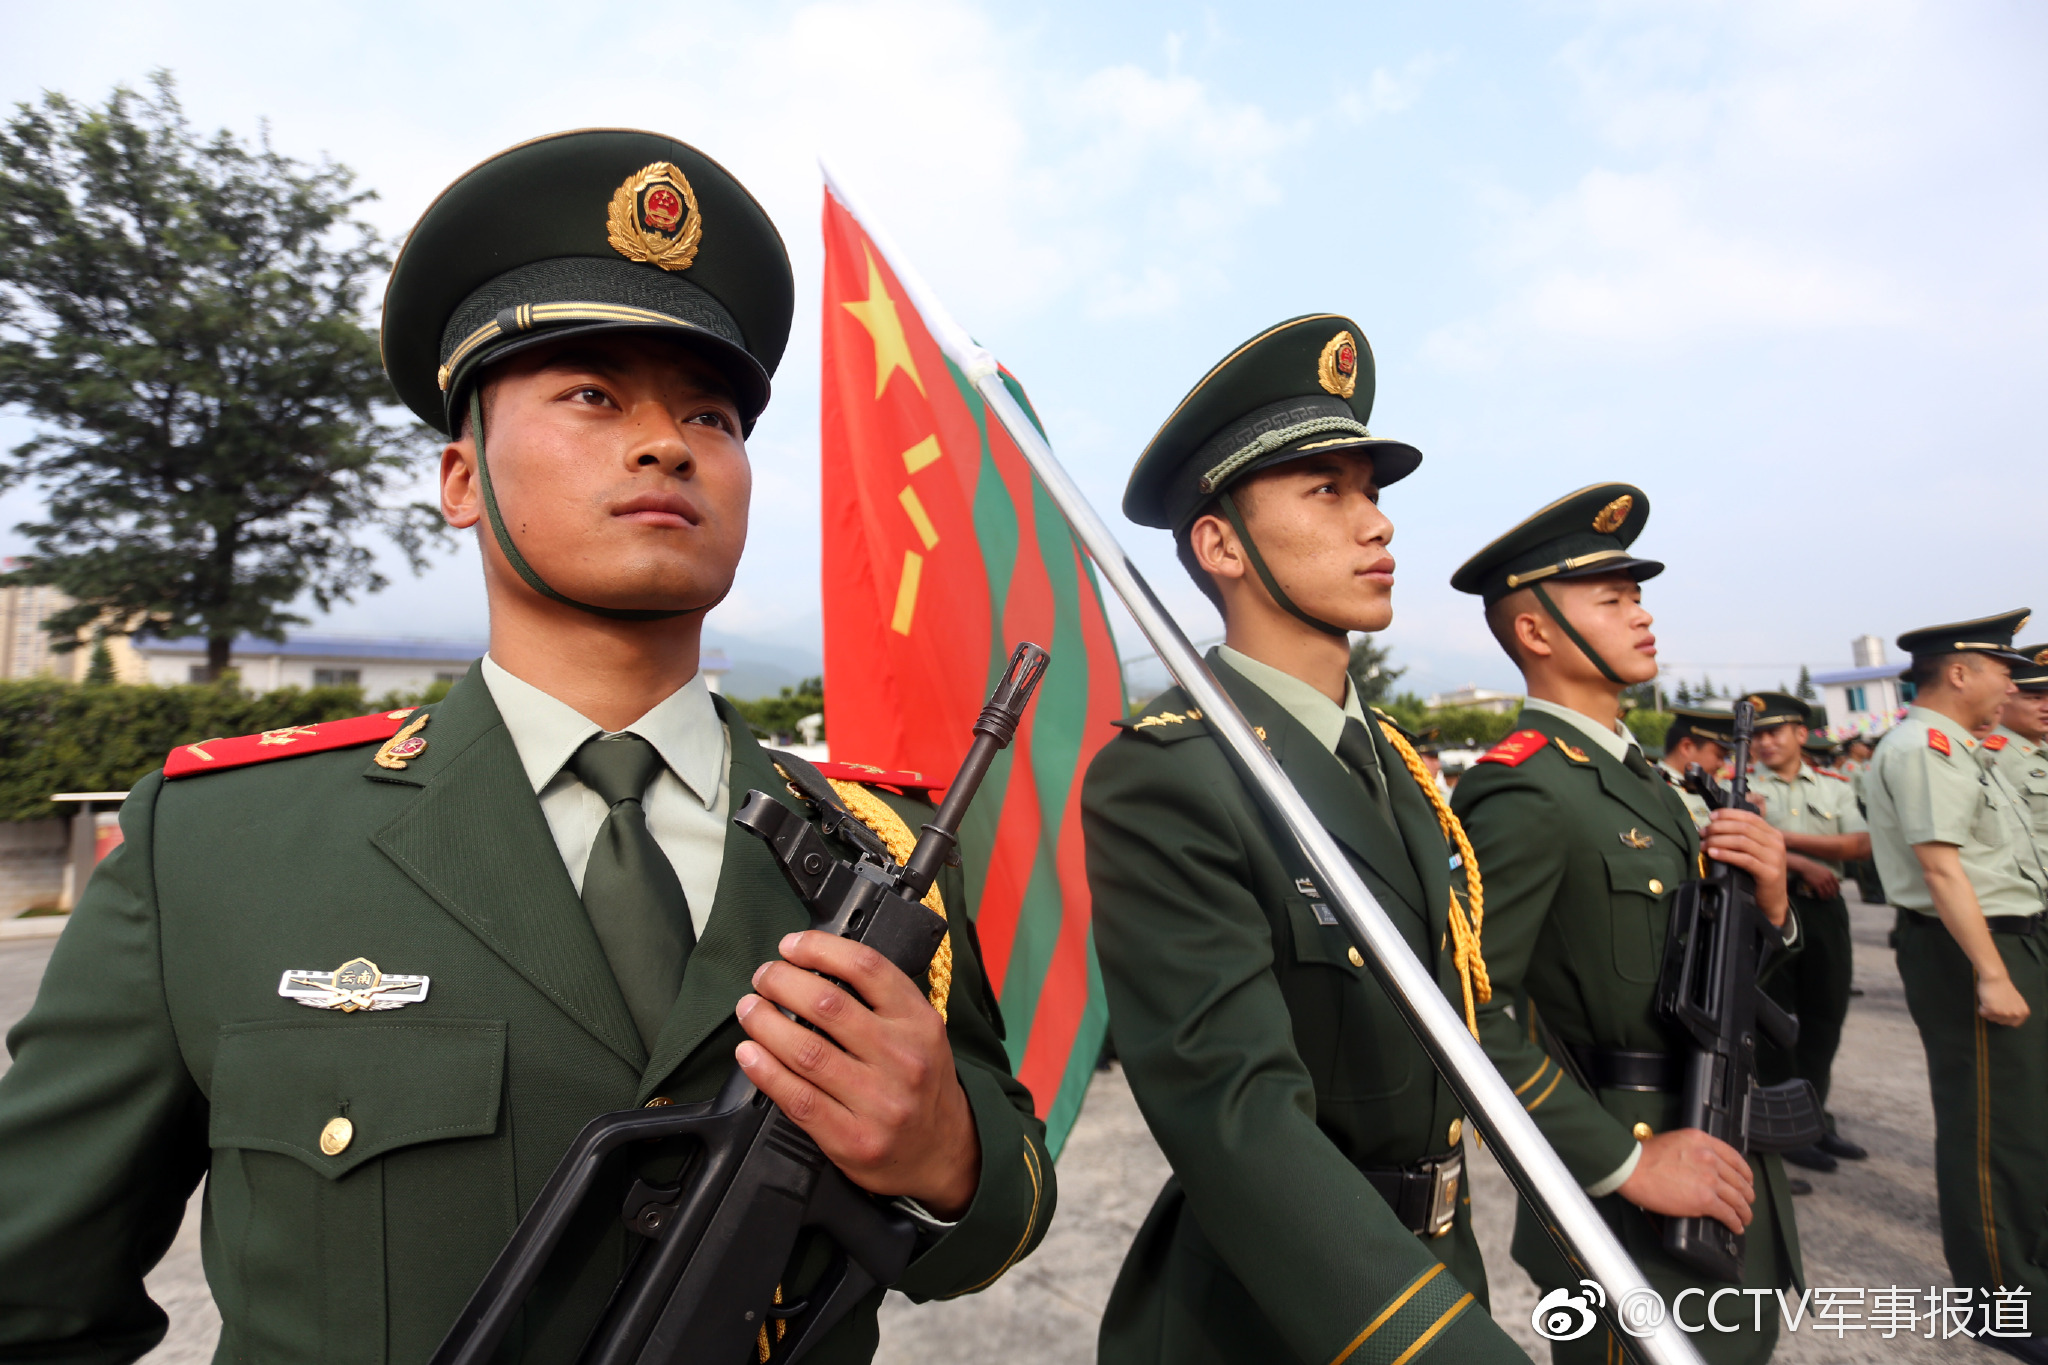 8月29日,武警大理支队机动大队严密组织退伍老兵向武警部队旗告别仪式